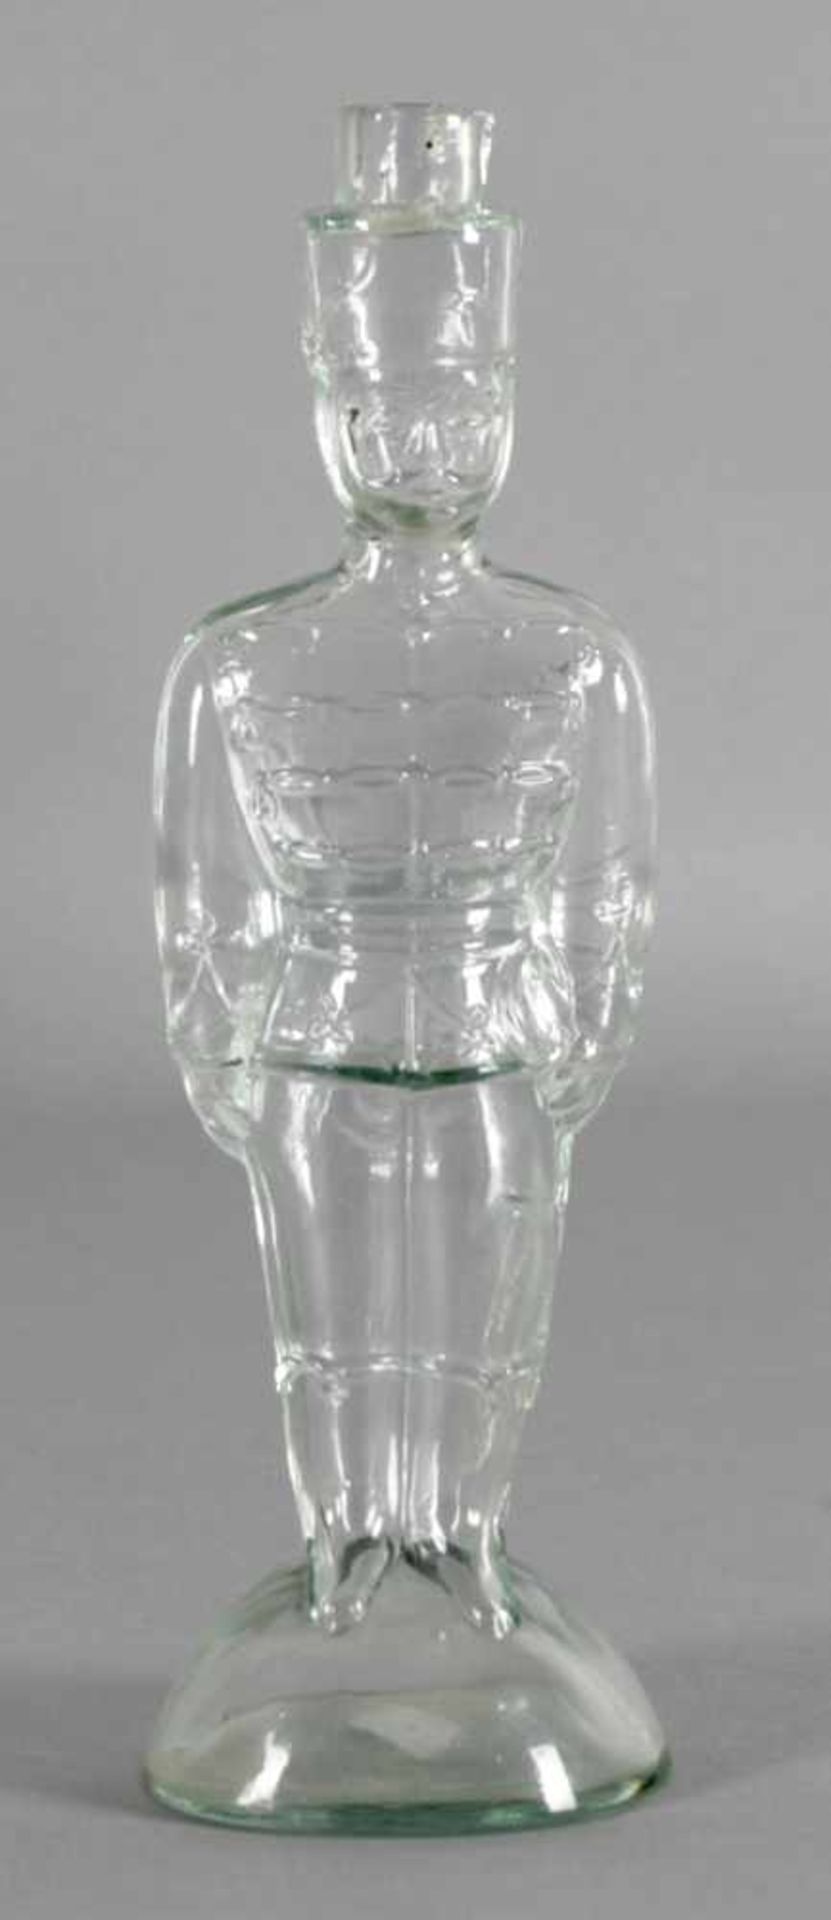 Flasche, Husar, deutsch, 2. Hälfte 19. Jh.formgeblasenes Glas in Gestalt eines Husaren,